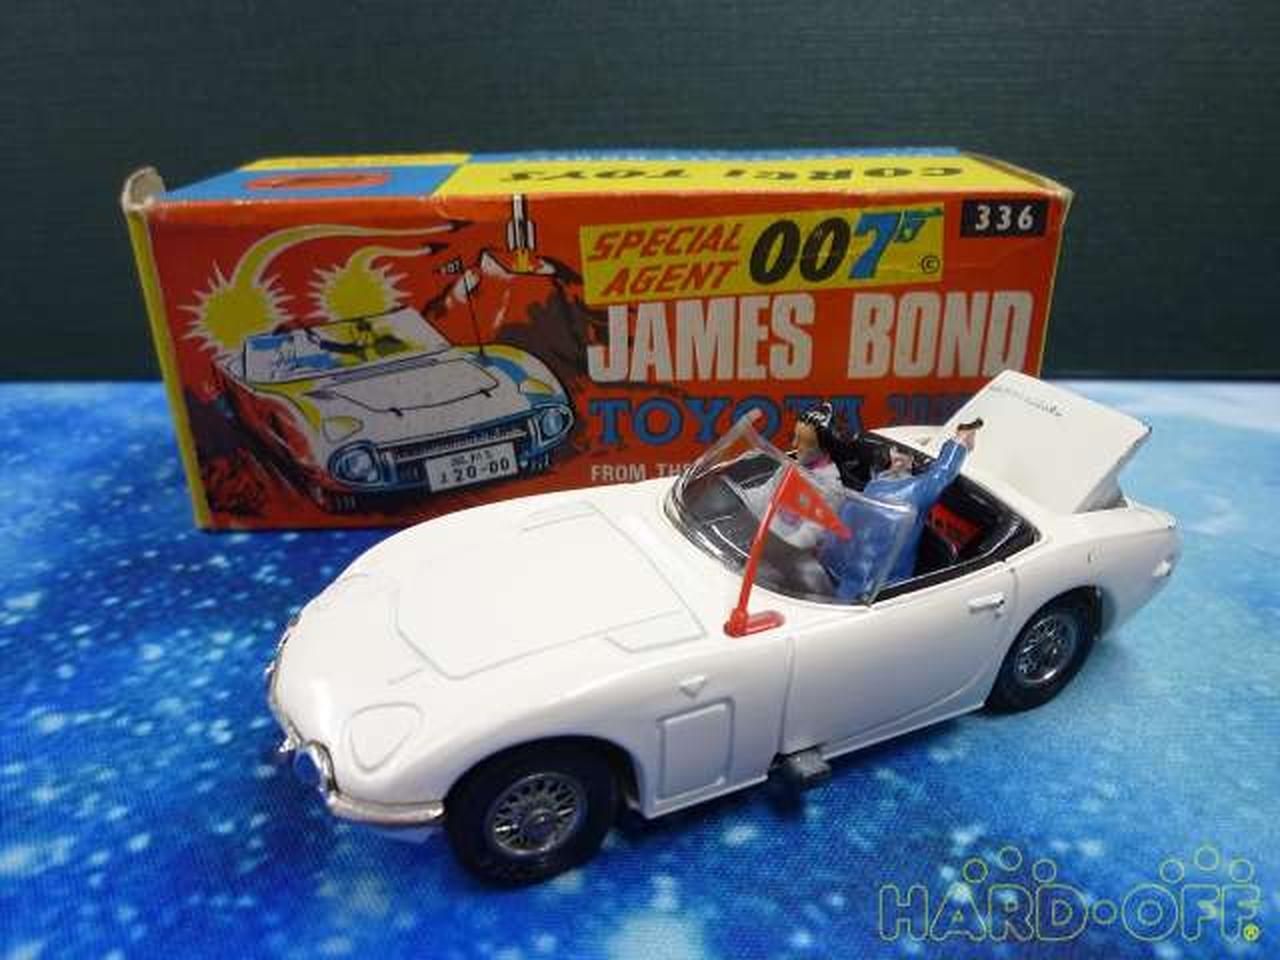 007 James Bond Management No.3296 Model No.336 2000GT CORGI TOYS